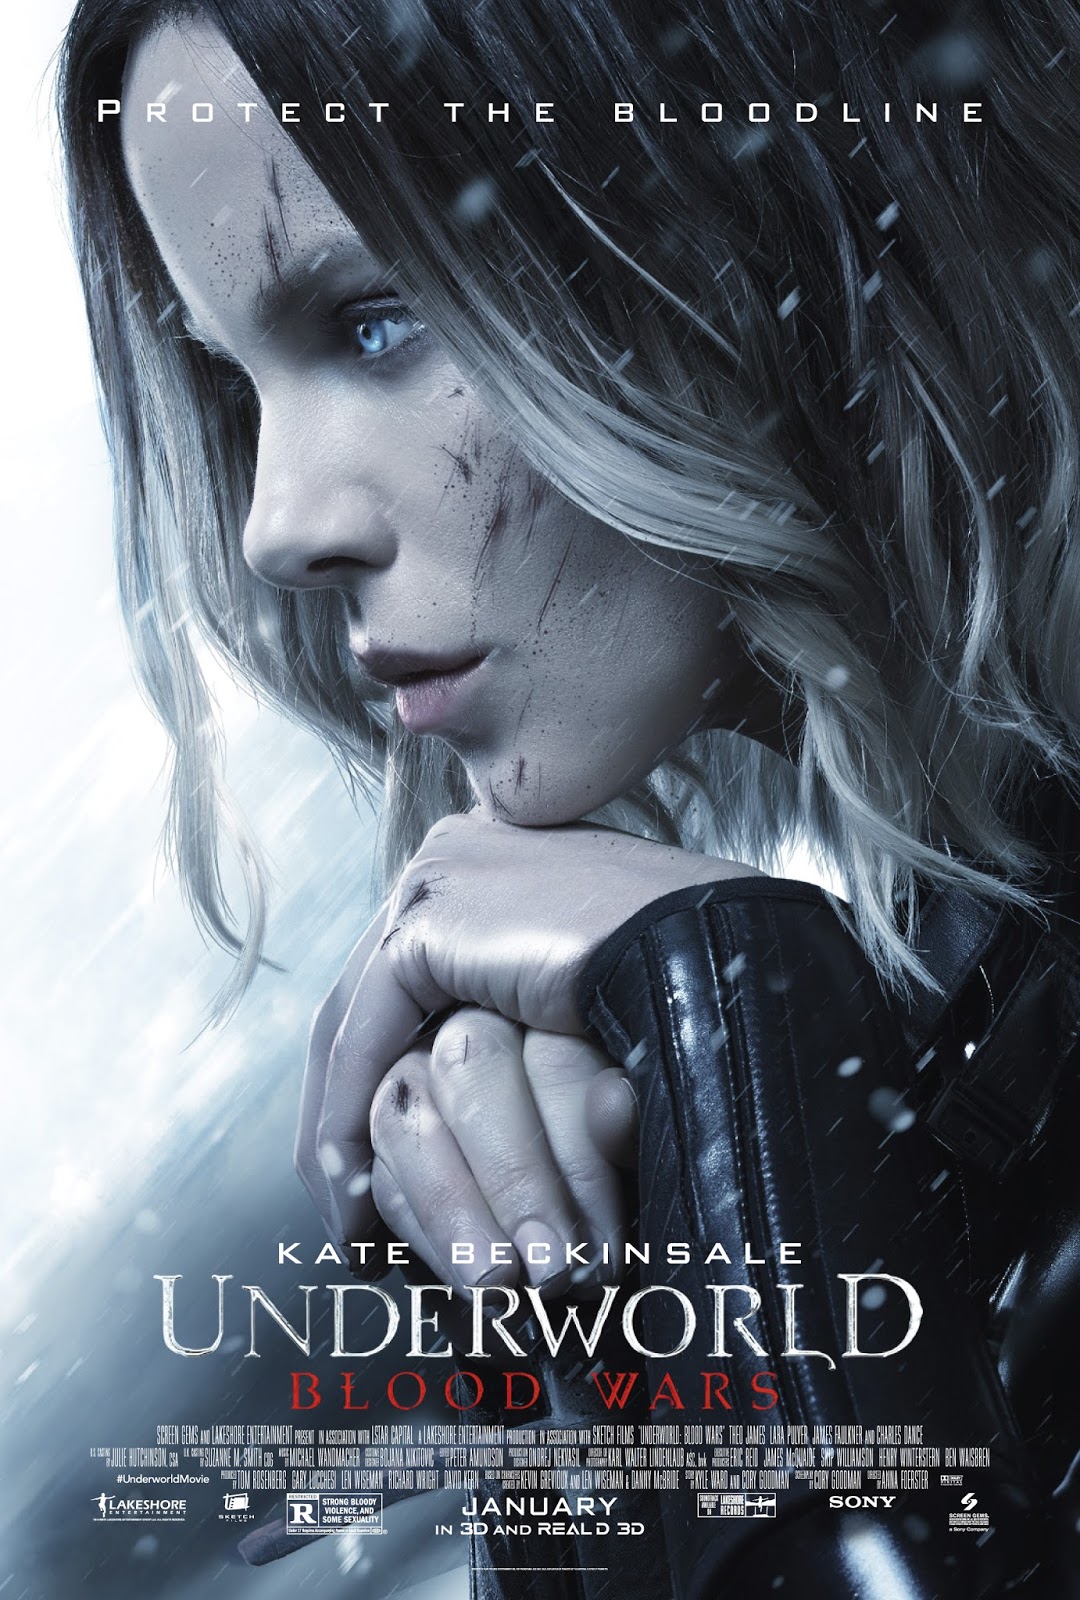 Film-Arcade.net: "Underworld: Blood Wars" Review by Tim ...